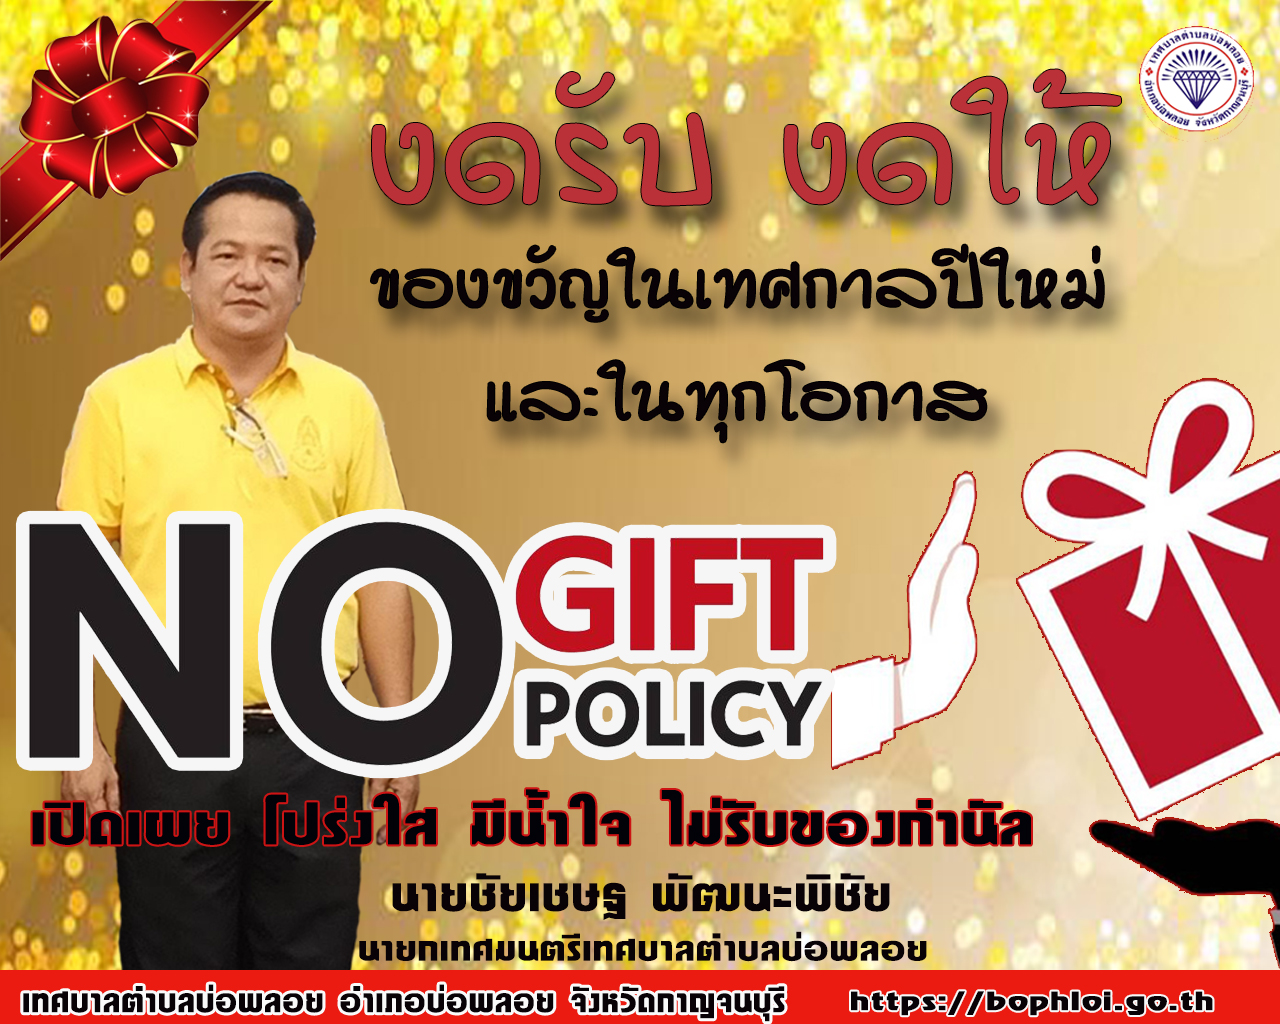 ❌ No Gift Policy ❌ "งดให้​ งดรับ" 